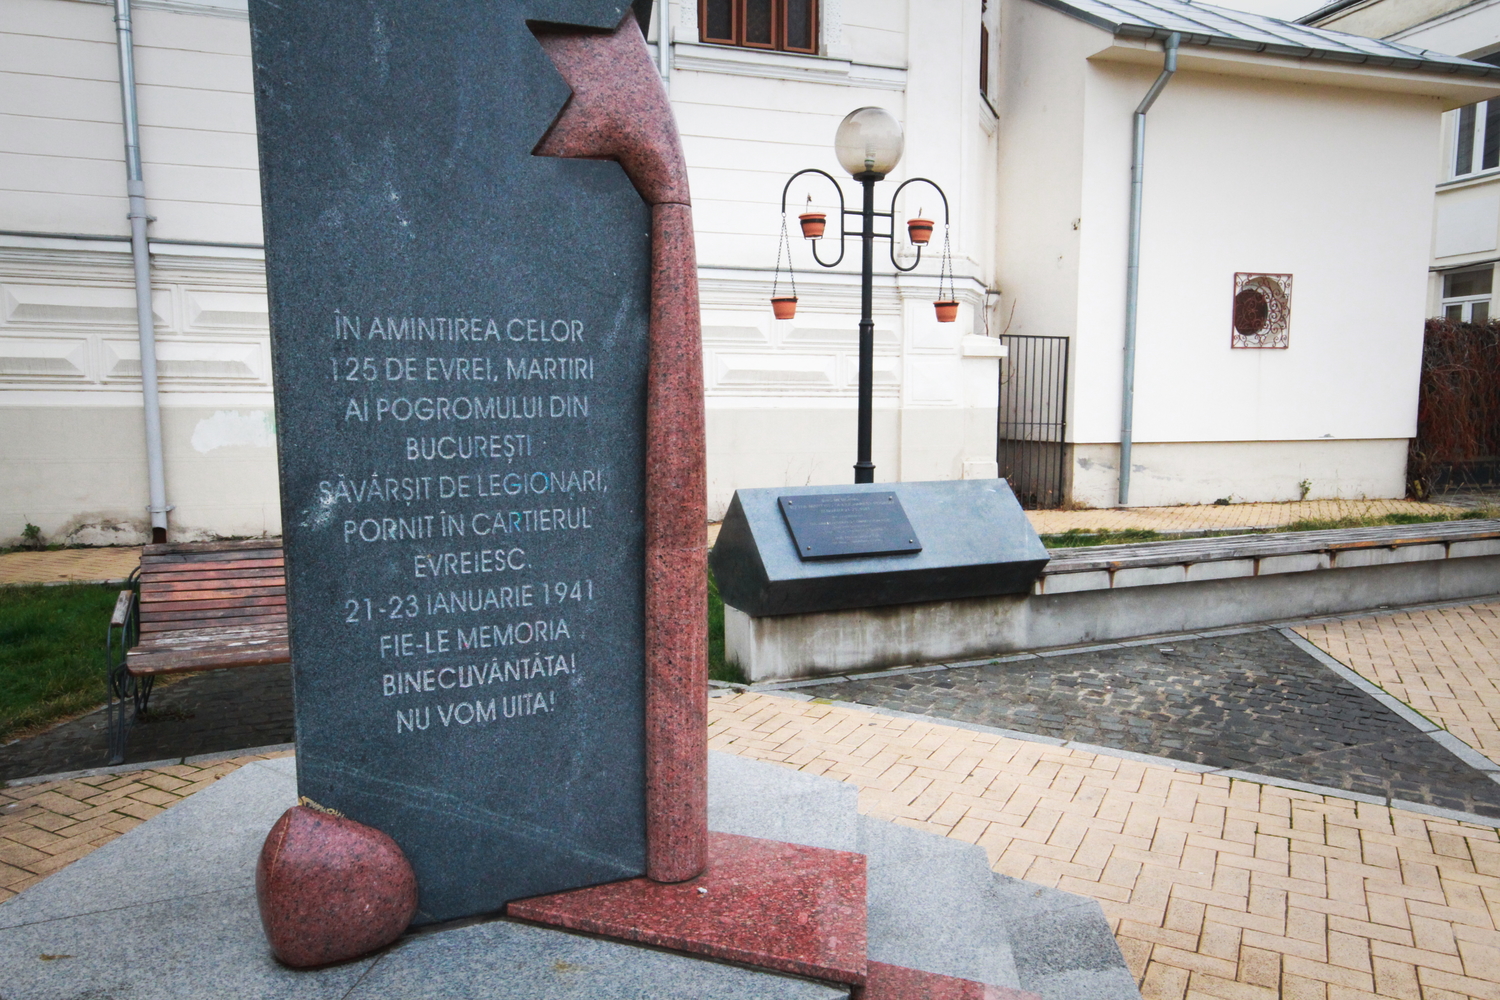 Une stèle en mémoire des victimes du pogrom de Bucarest, qui a eu lieu six mois avant le pogrom de Iasi. 125 Juifs ont été tués par les Légionnaires fascistes de la Garde de Fer, entre le 21 et le 23 janvier 1941. © Globe Reporters